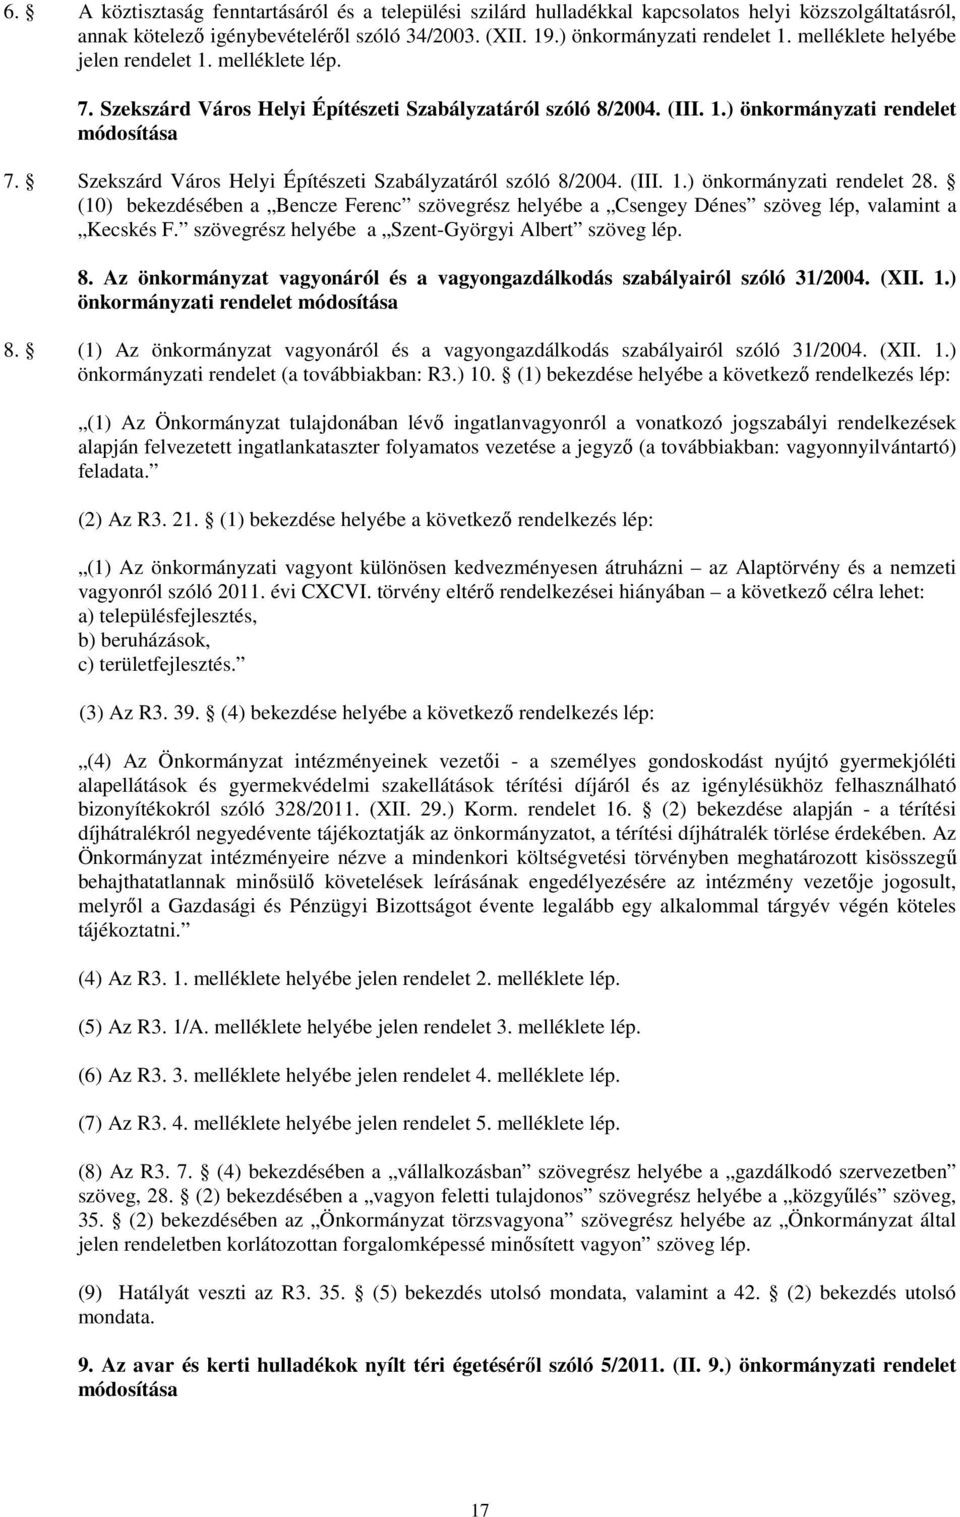 Szekszárd Város Helyi Építészeti Szabályzatáról szóló 8/2004. (III. 1.) önkormányzati rendelet 28.